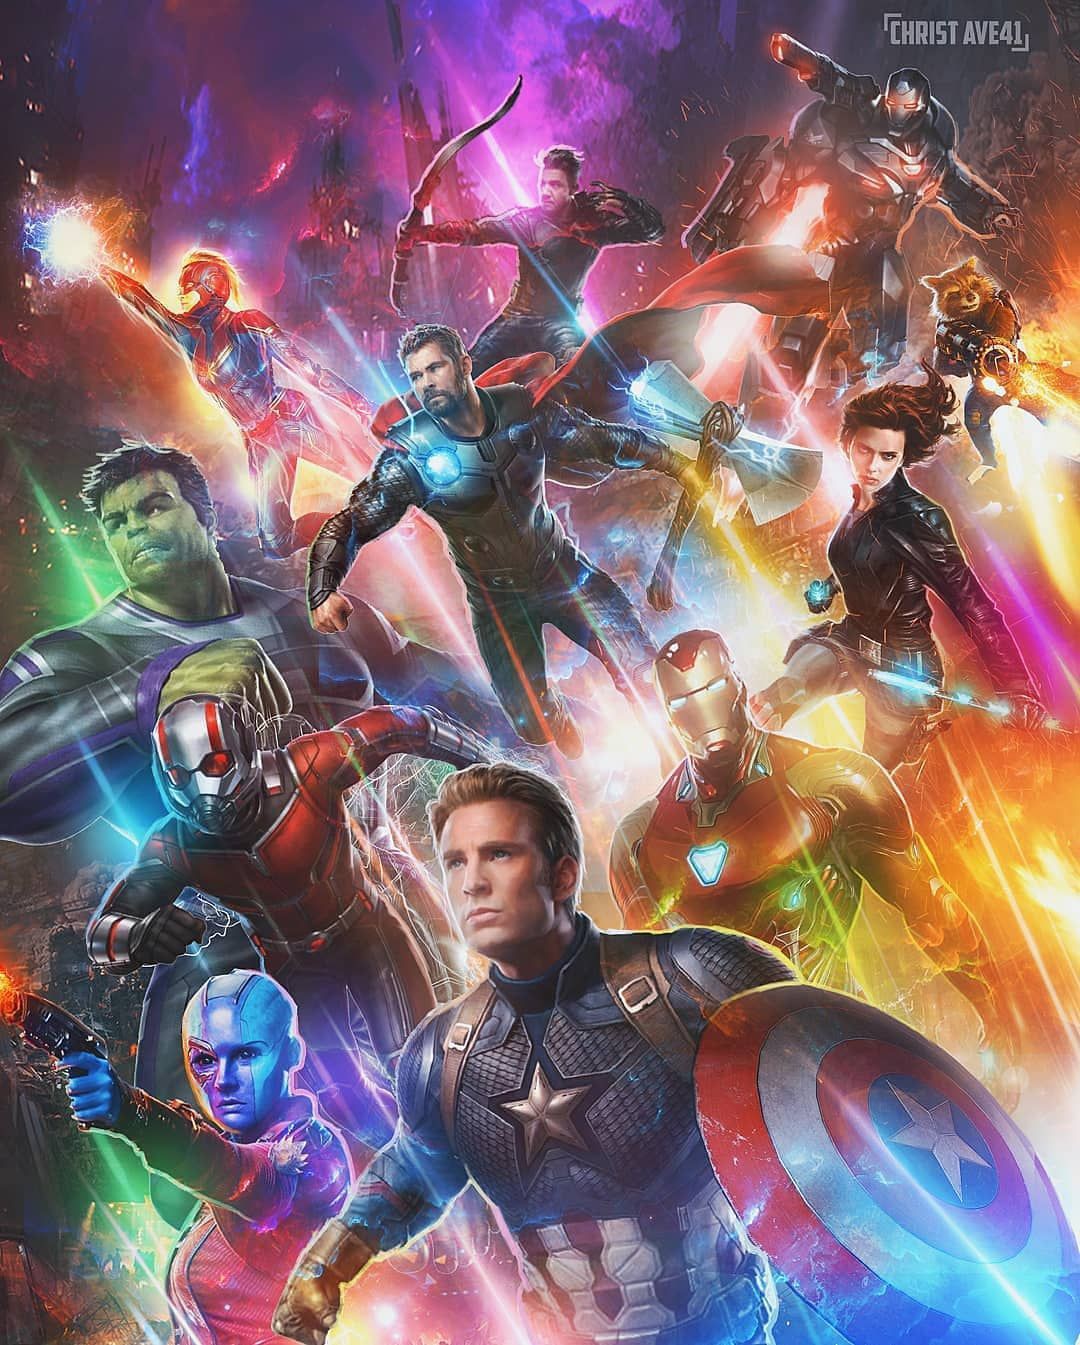 Hình nền điện thoại Marvel: Sở hữu cho mình một tấm hình nền điện thoại về các siêu anh hùng Marvel sẽ khiến cho điện thoại của bạn trở nên ấn tượng và cá tính hơn. Dù bạn là fan của Captain America, Black Widow, hay Spider-man, đều có thể yêu cầu được những hình nền độc đáo, đa dạng và sống động trong kho ảnh của chúng tôi.